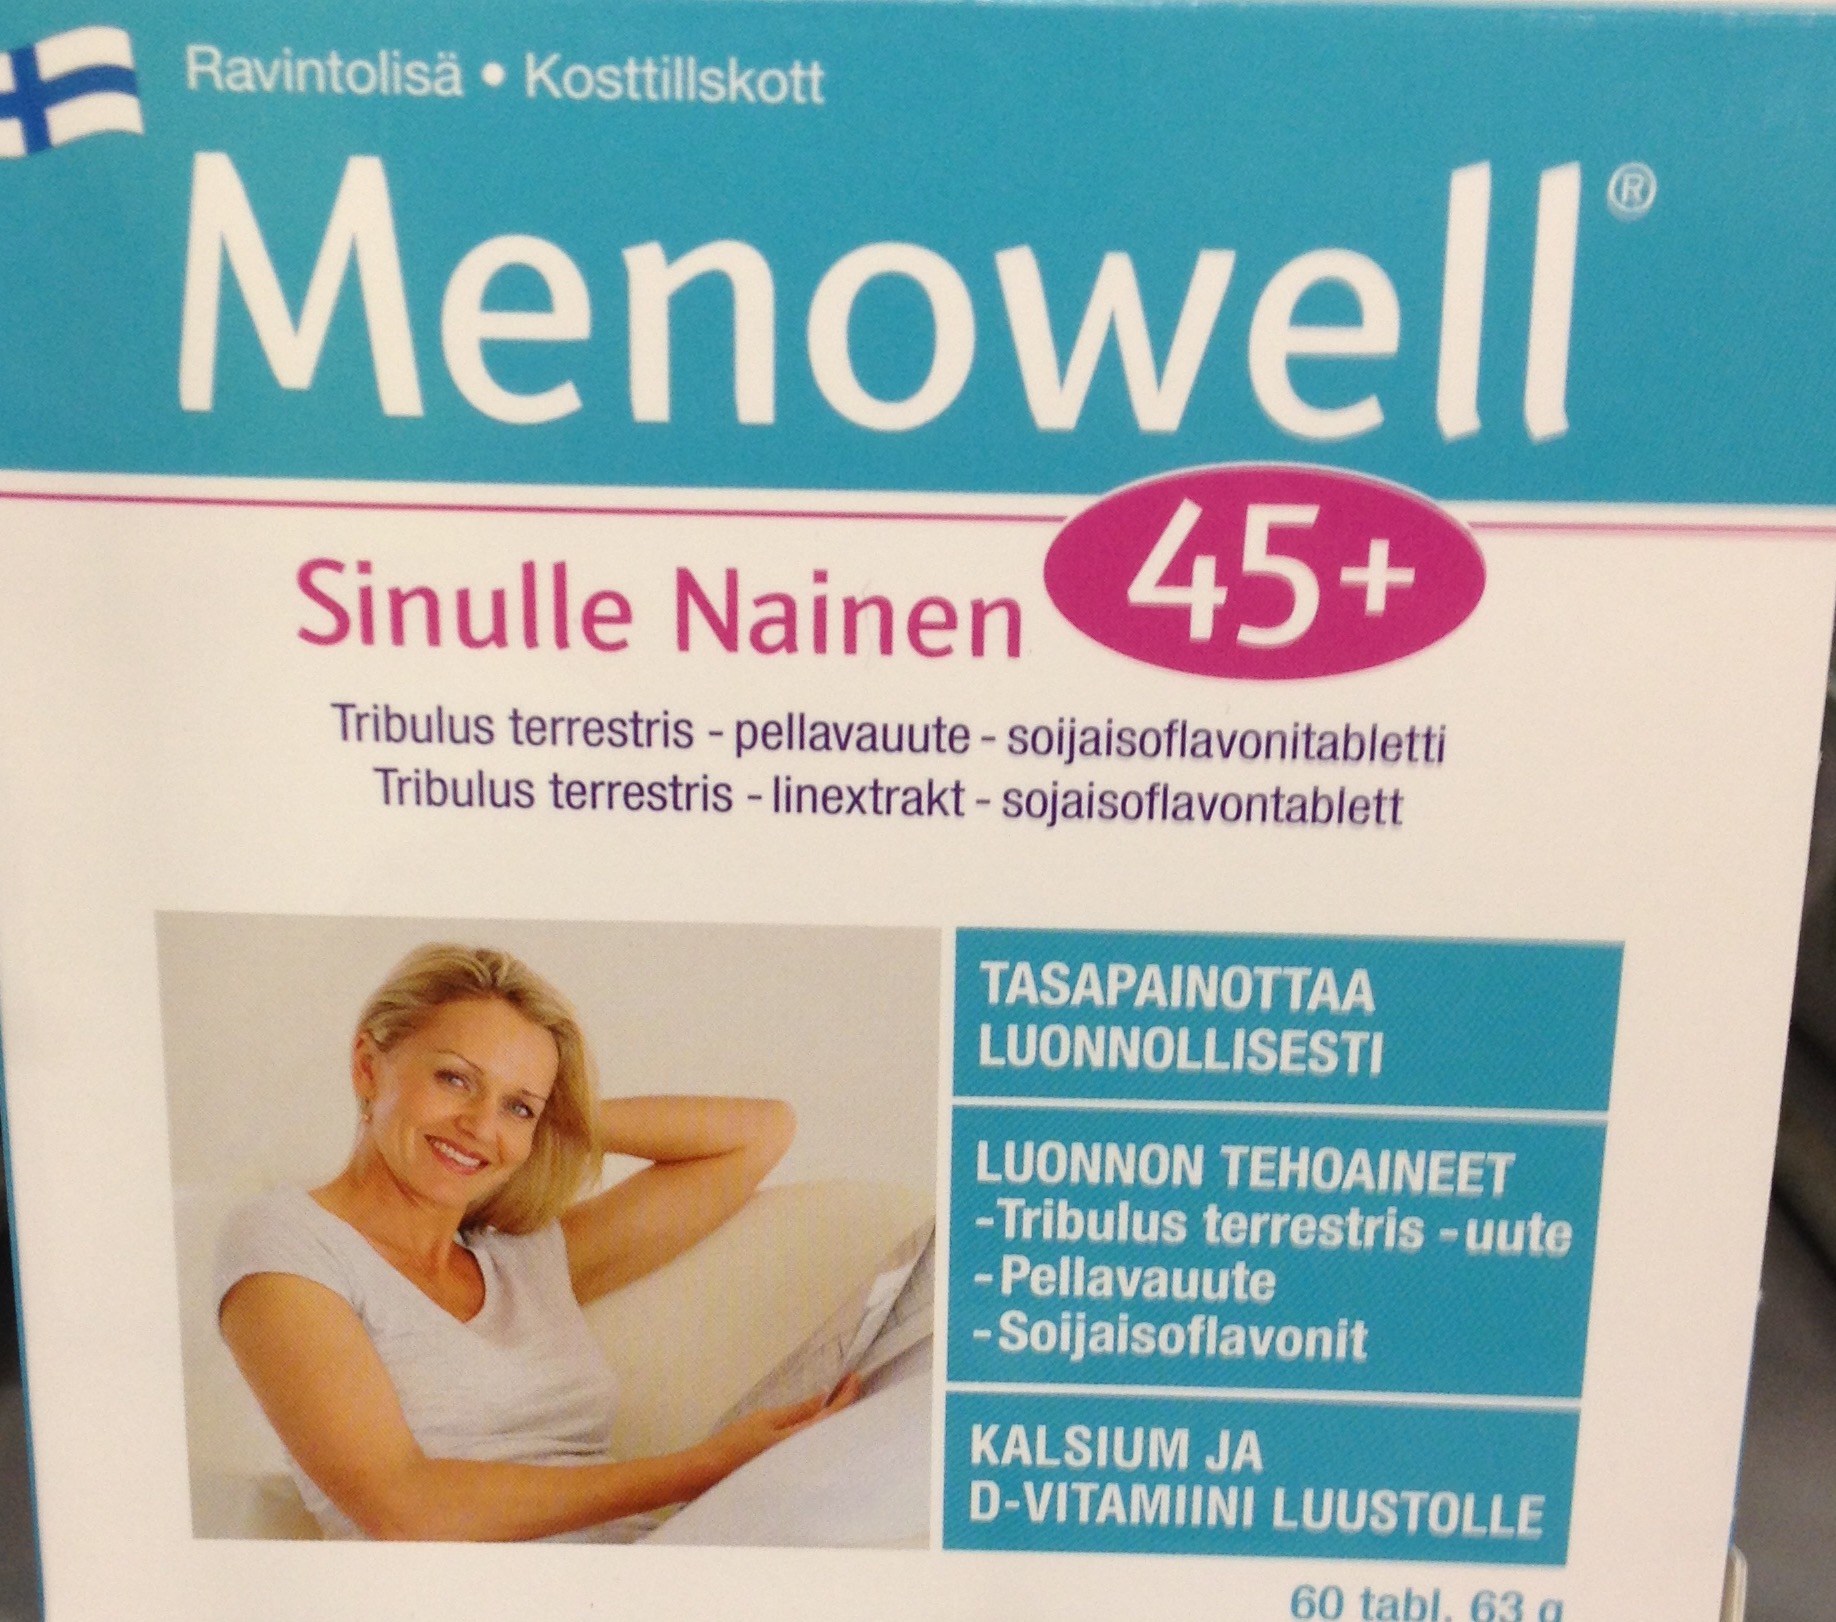 Лучшие витамины для женщины при климаксе. Витамины Menowell 45+. Менопауза витамины menopause. Витамины из Финляндии 45+. Женские витамины финские.